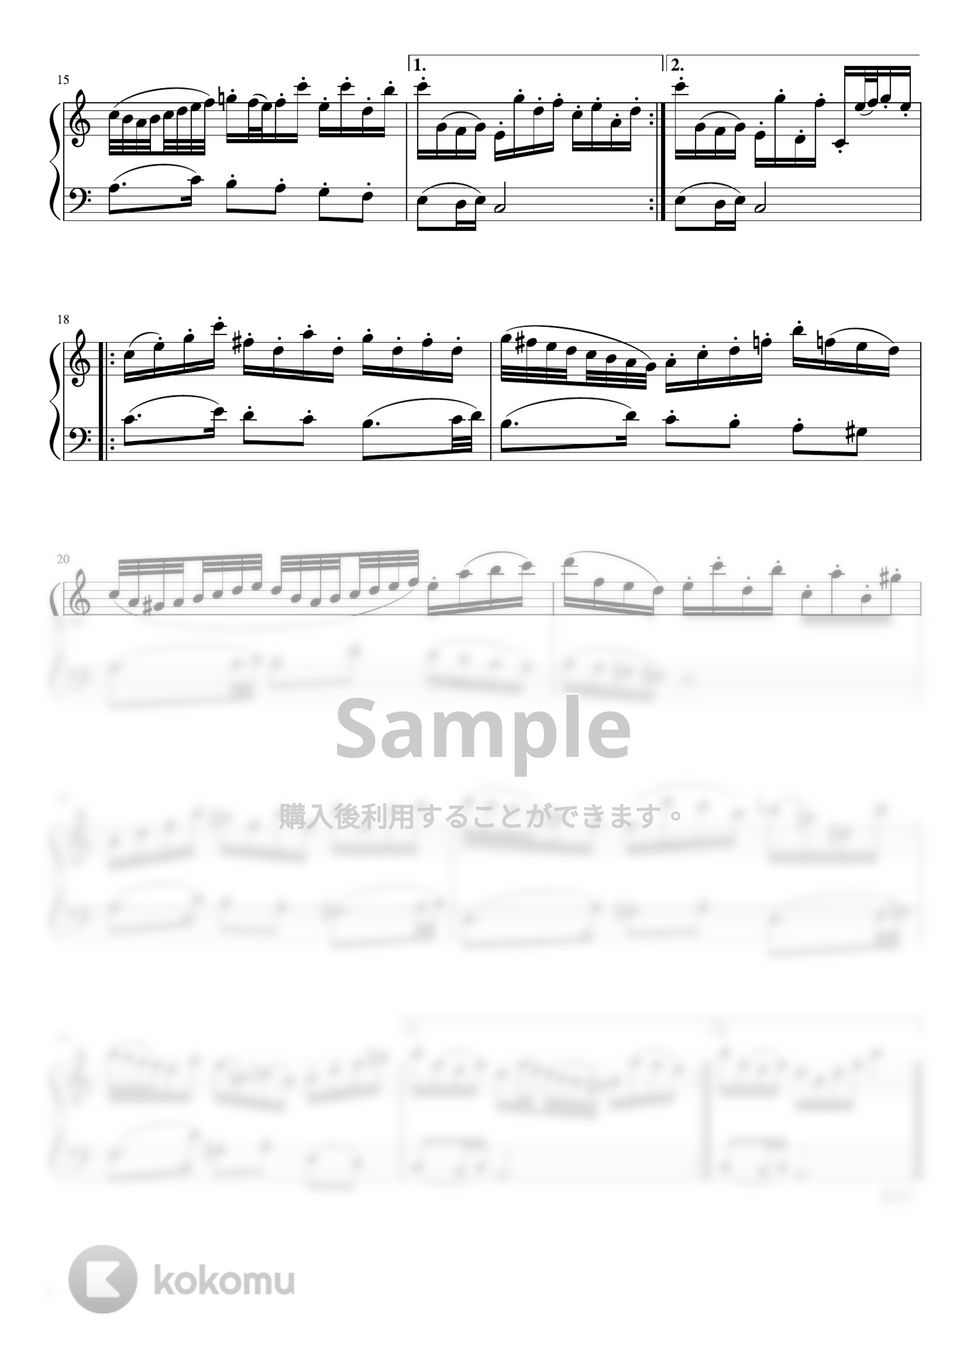 バッハ - 管弦楽第2番「ポロネーズ」 (Am/ピアノソロ中級) by pfkaori